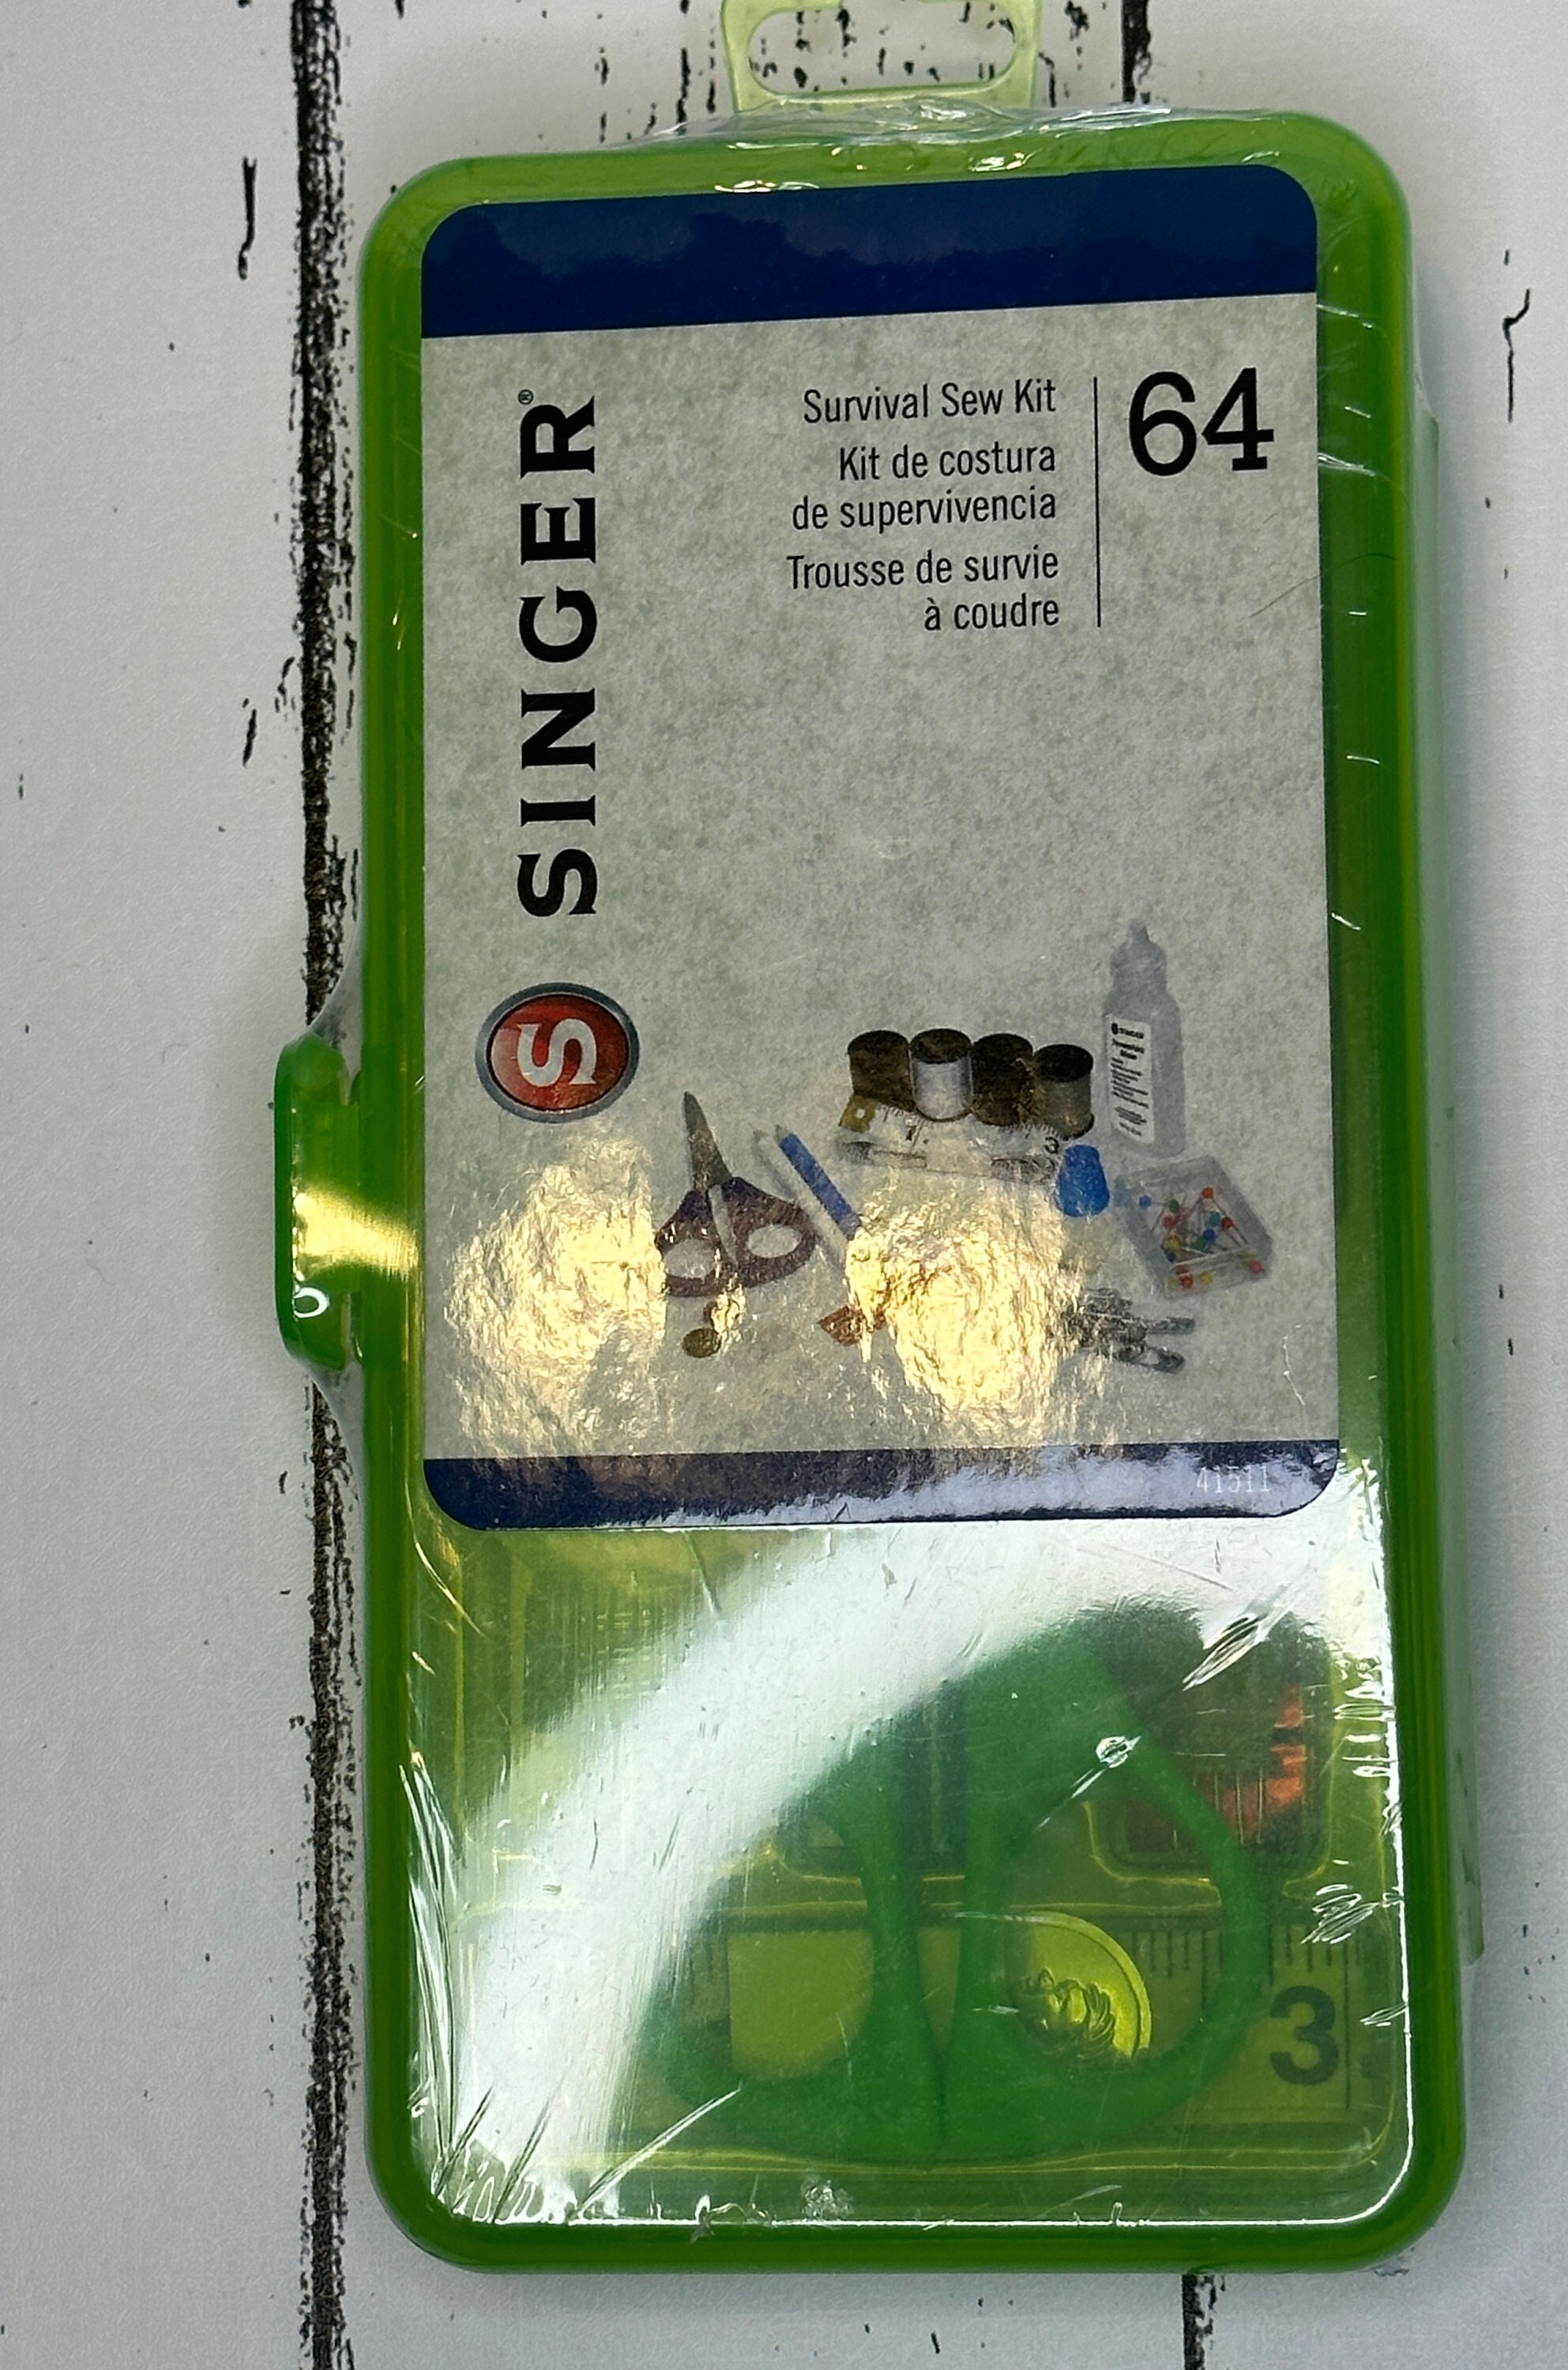 Sale Singer Survival Sewing Kit 64 Pieces 